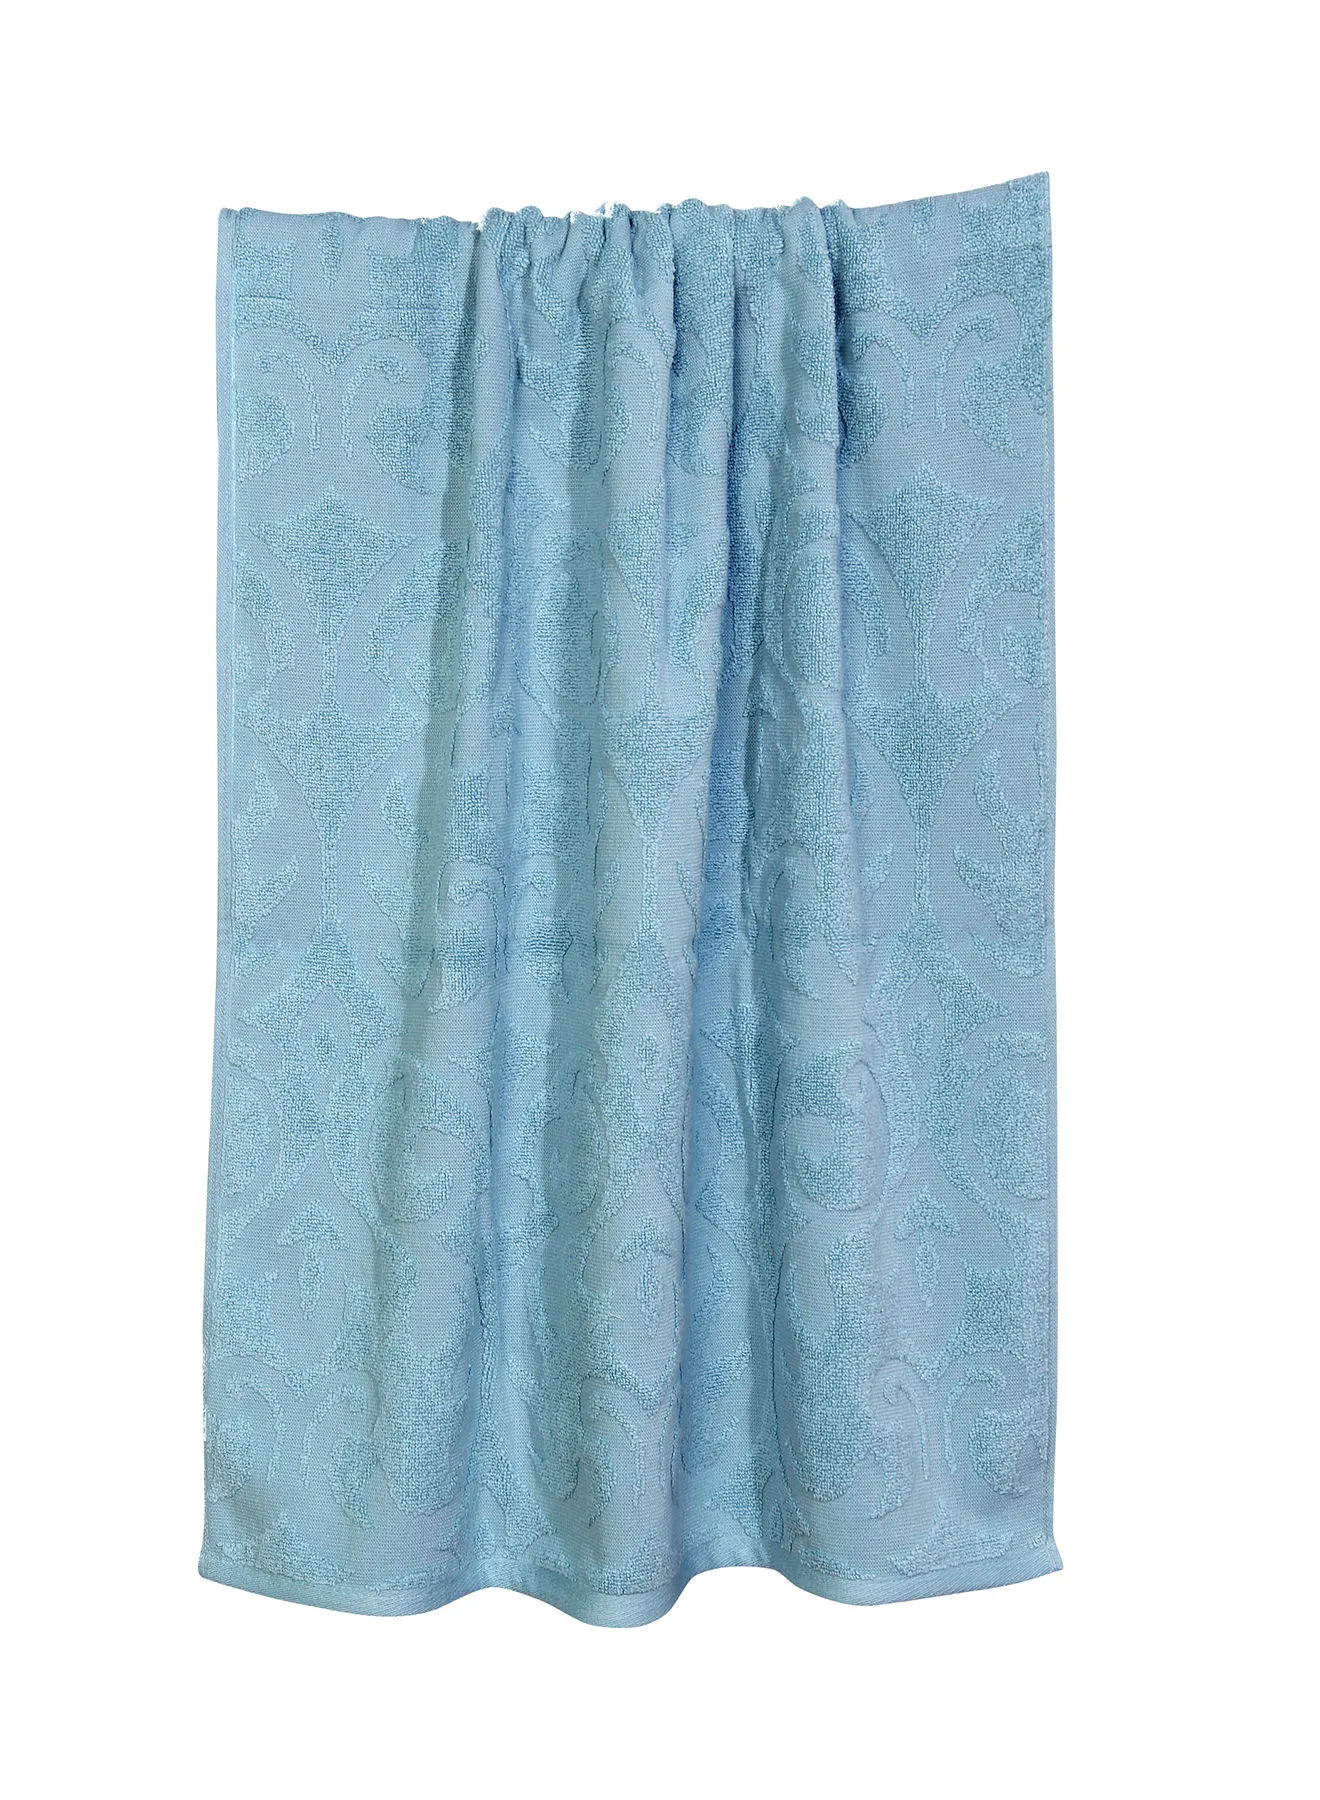 Hometown 6 Pack Bathroom Towel Set - 500 GSM 100% Cotton Low Twist - Blue Color -Economical